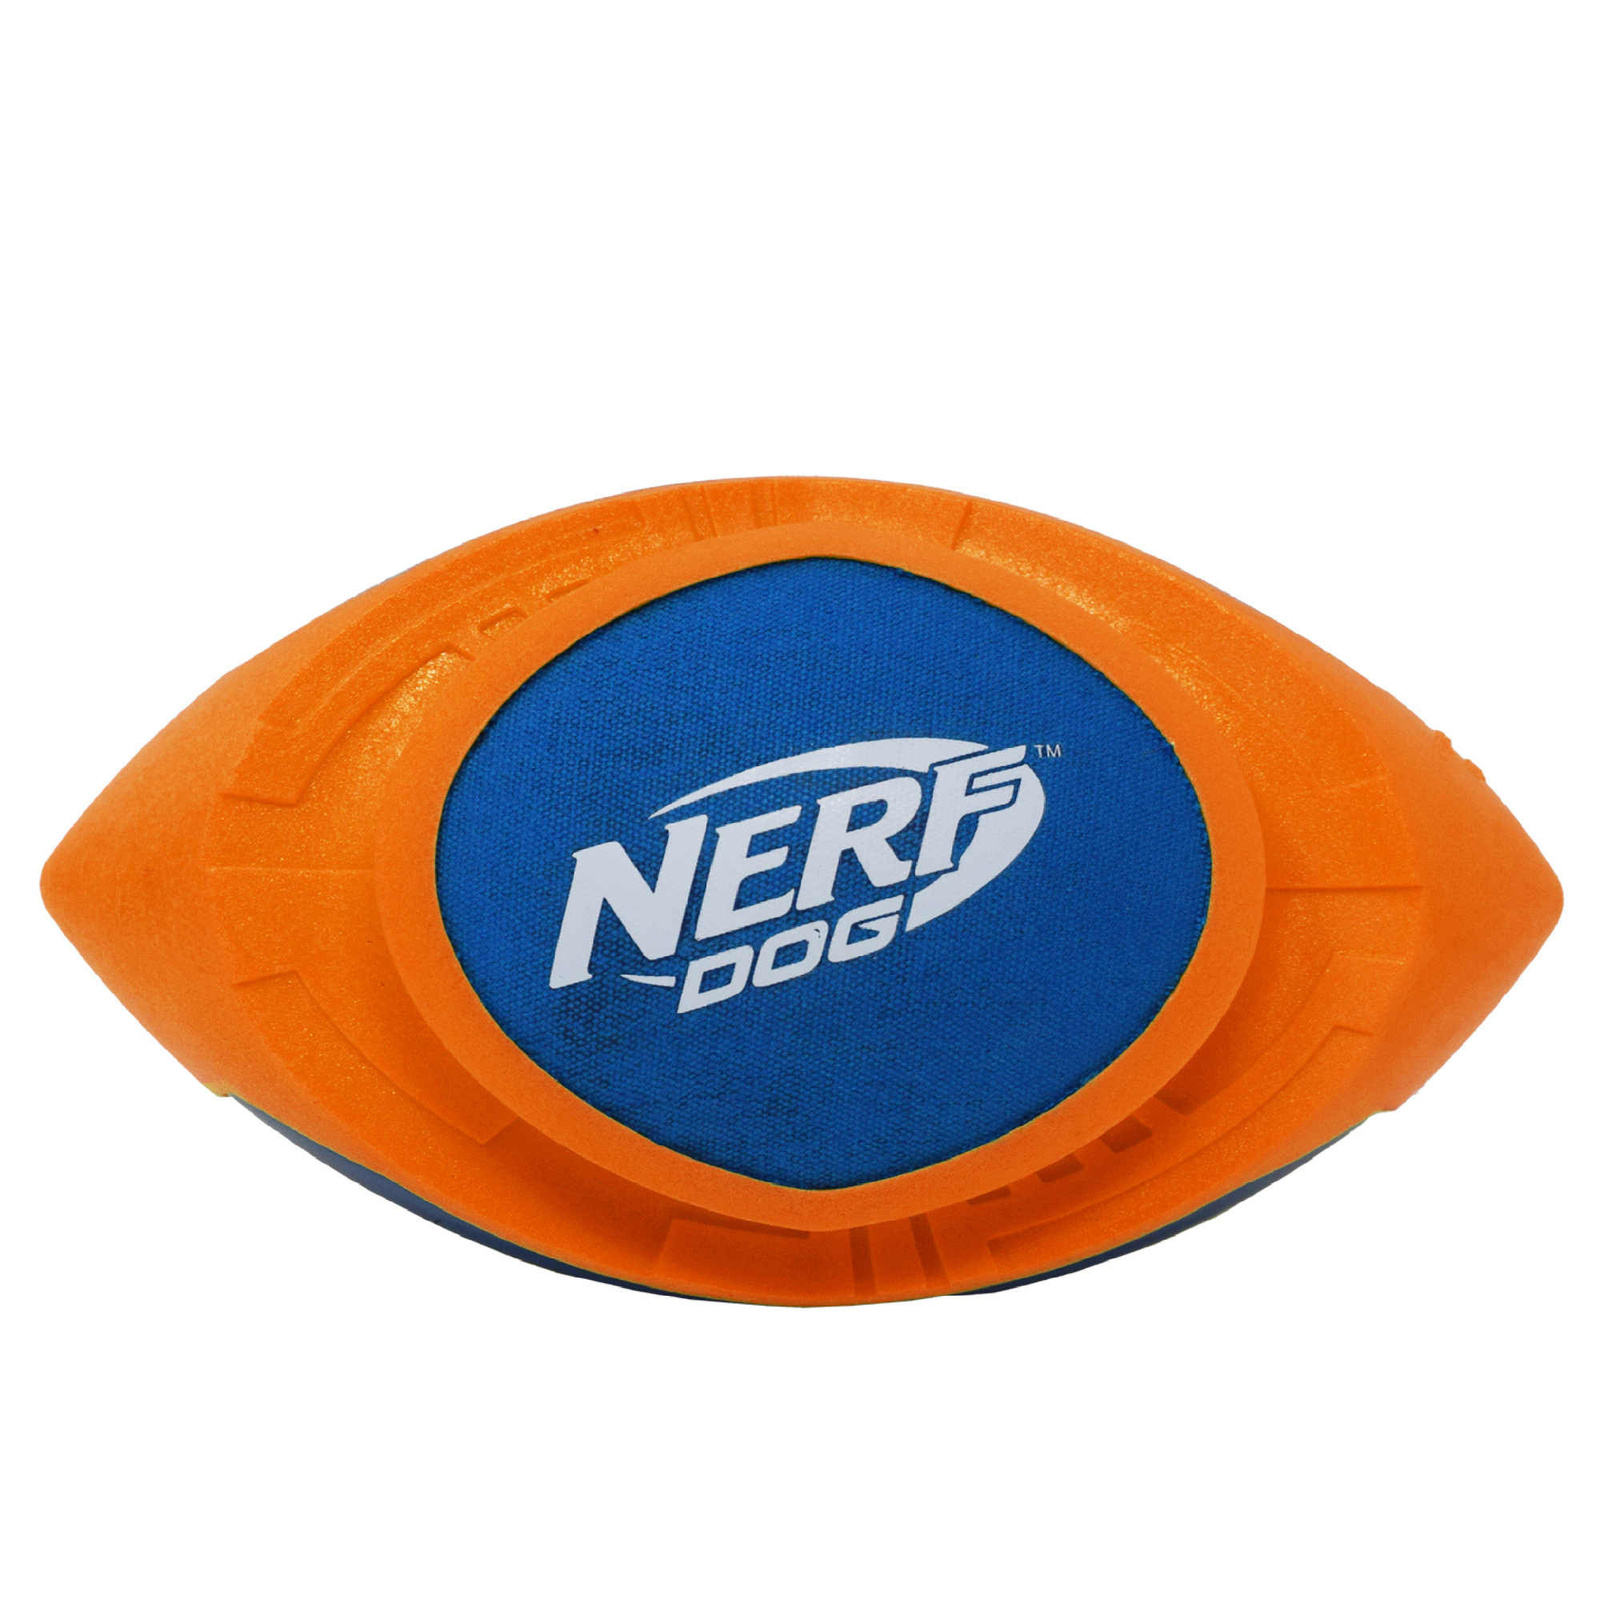 Nerf Nerf мяч для регби из вспененной резины и нейлона, 18 см (серия Мегатон), (синий/оранжевый) (263 г) nerf nerf мяч из вспененной резины и термопластичной резины 10 см серия мегатон синий оранжевый 380 г